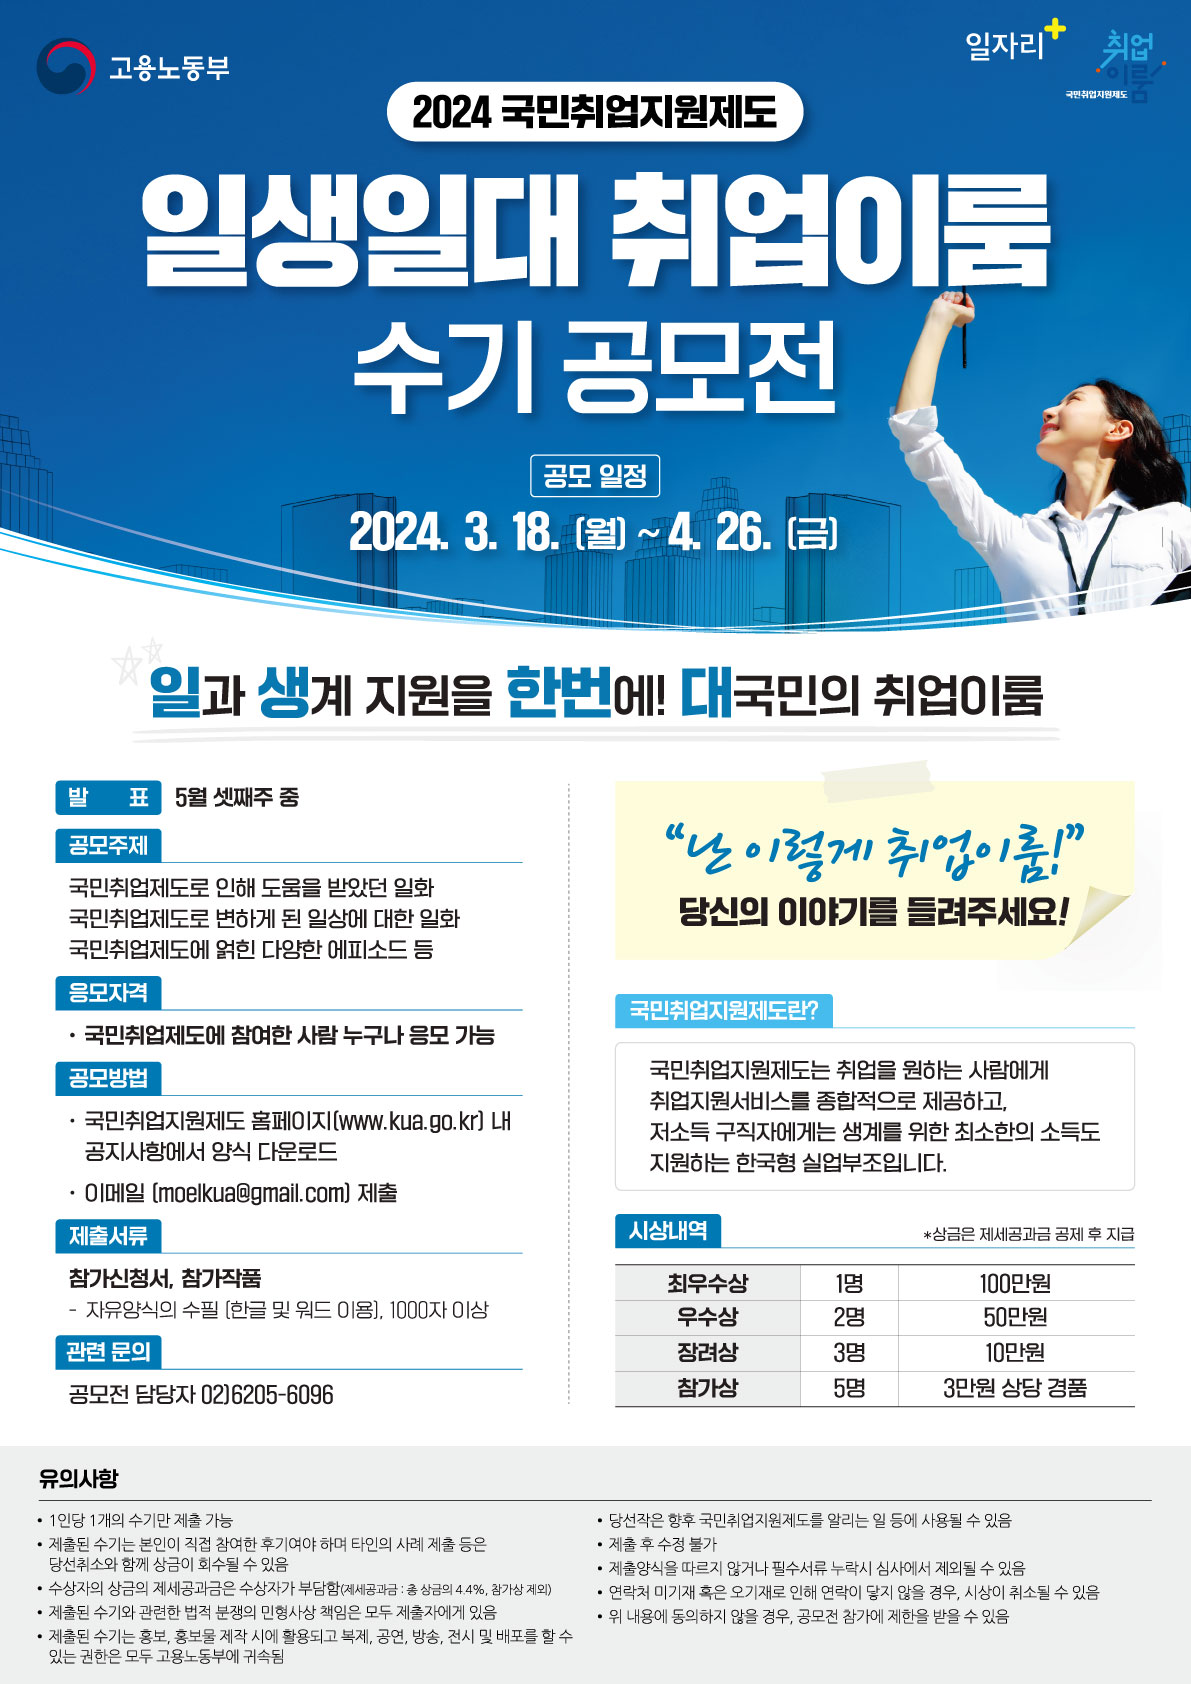 국민취업지원제도 취업이룸 수기 공모전 개최(2024.3.18.(월)~2024.4.26.(금))